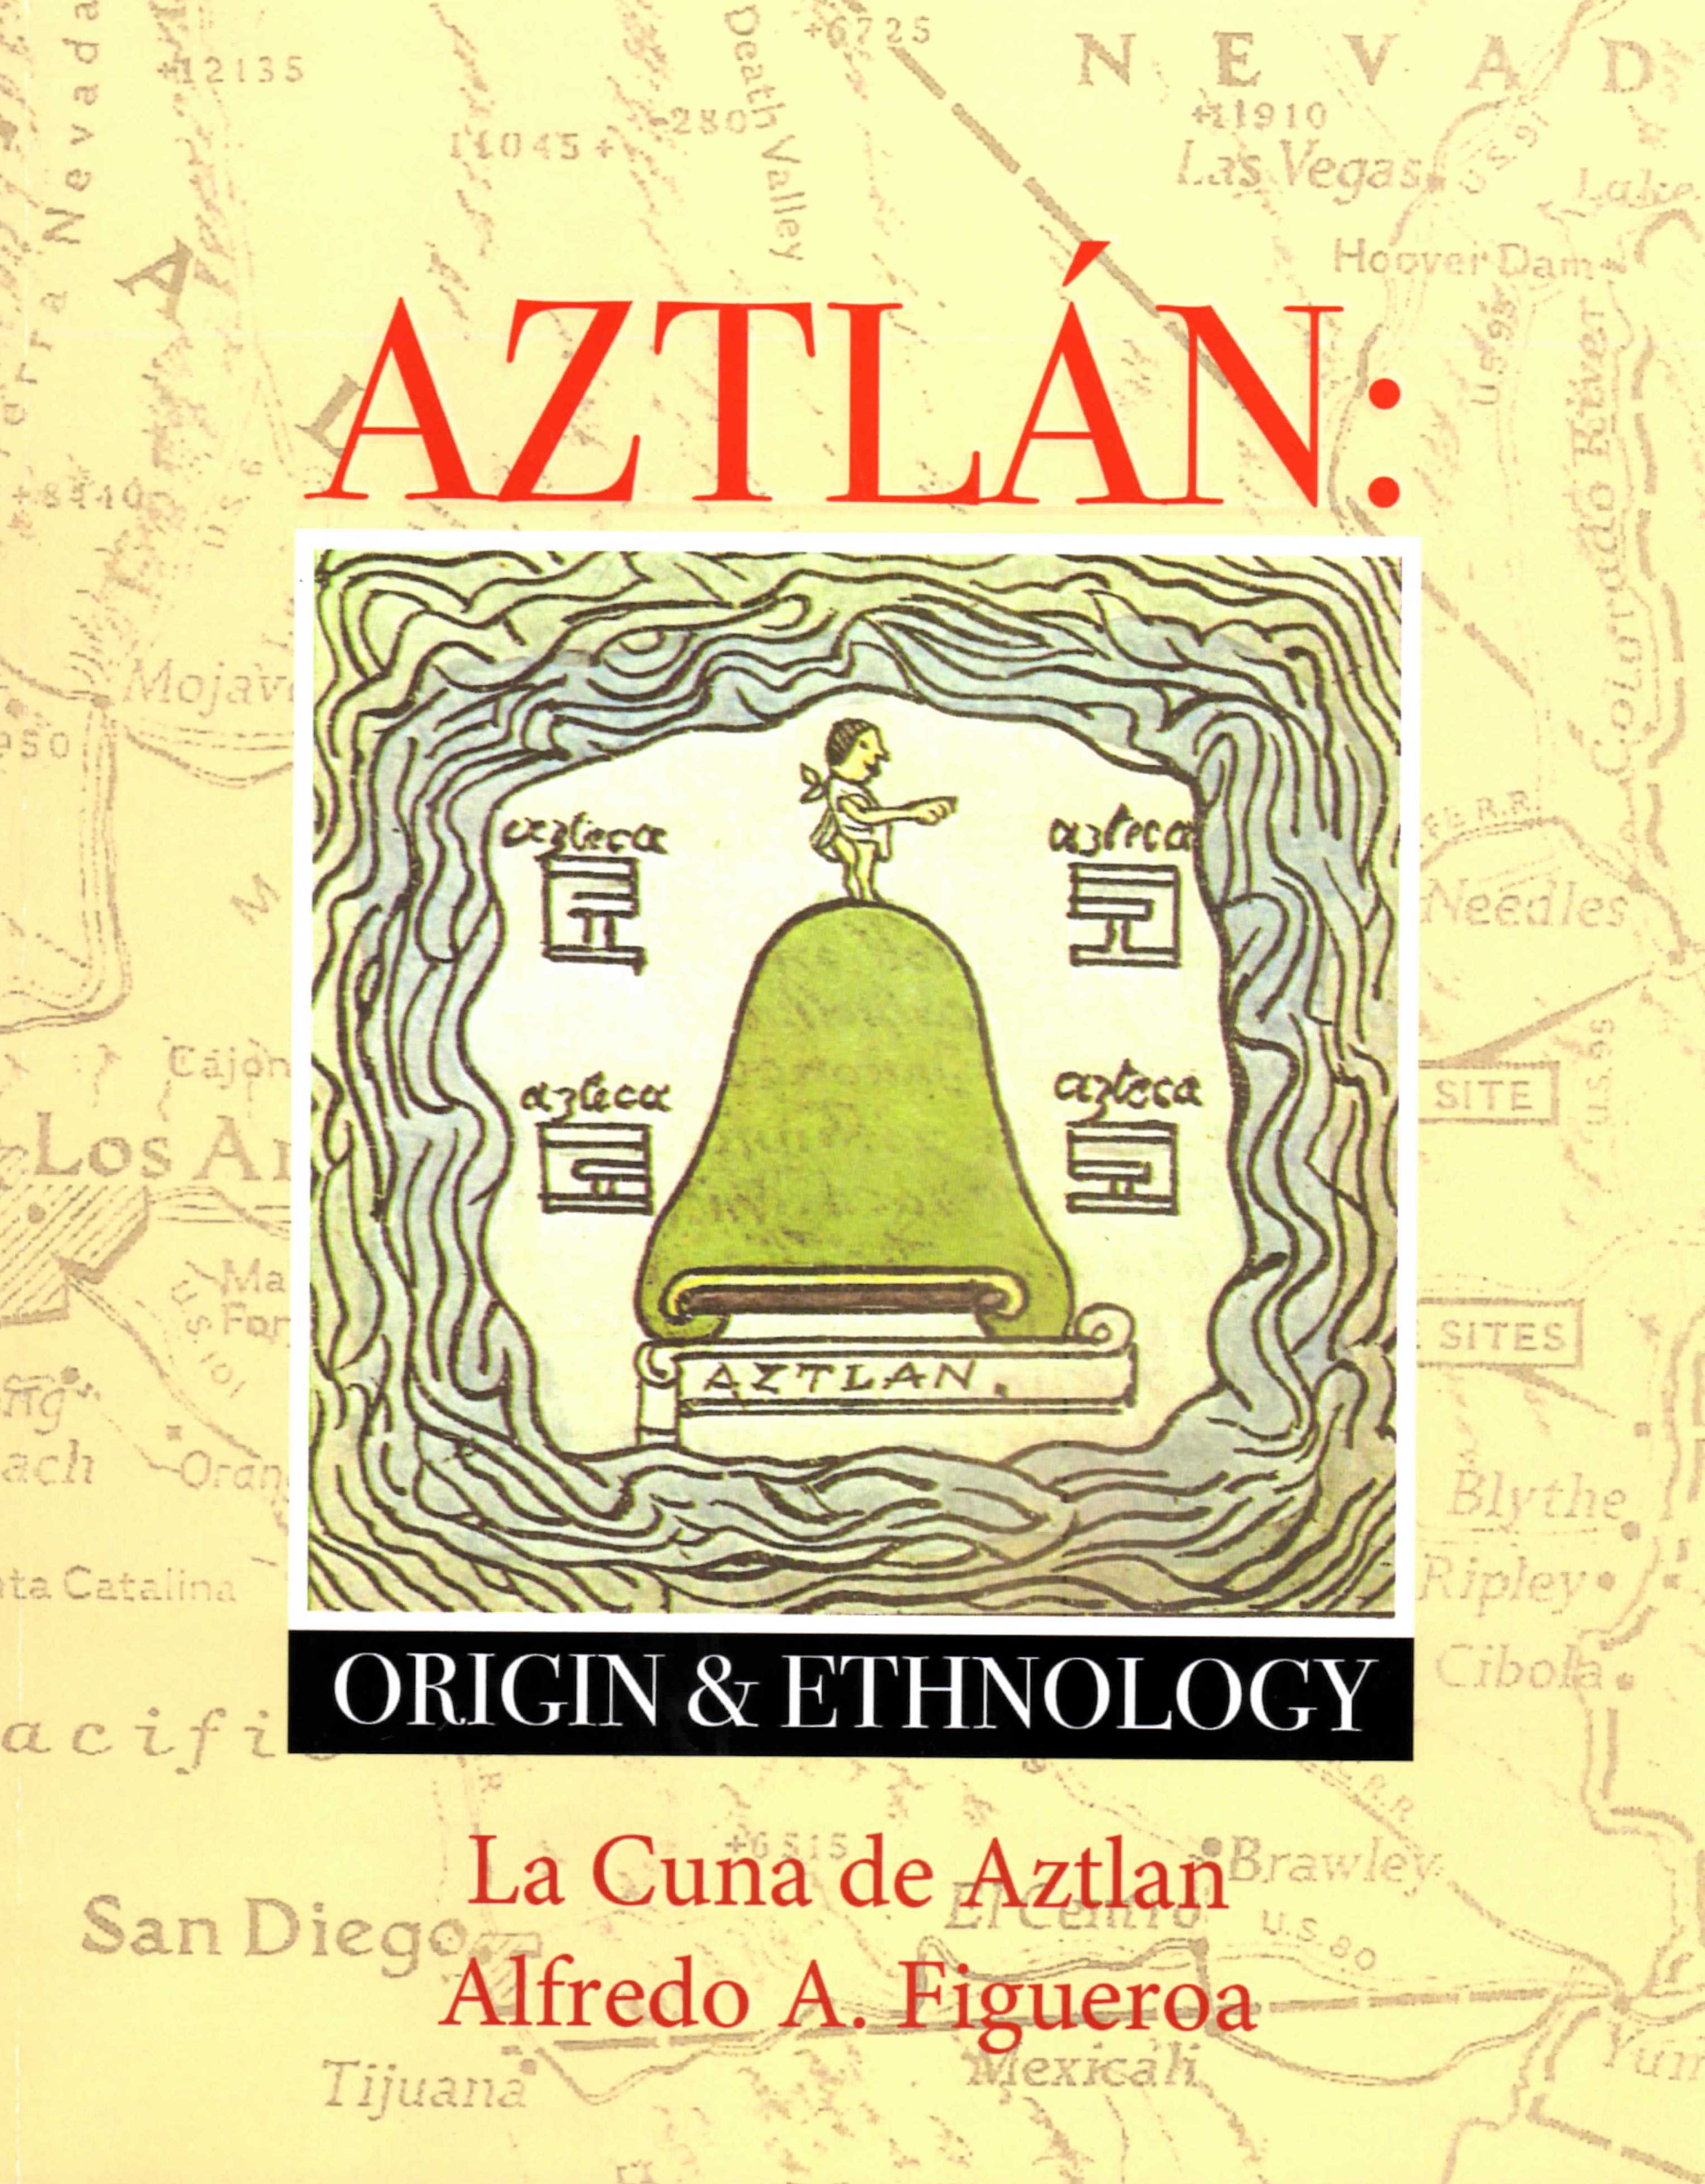 Lake Havasu Museum of History Presents Aztlan: Origin and Ethnology with Alfredo Figueroa